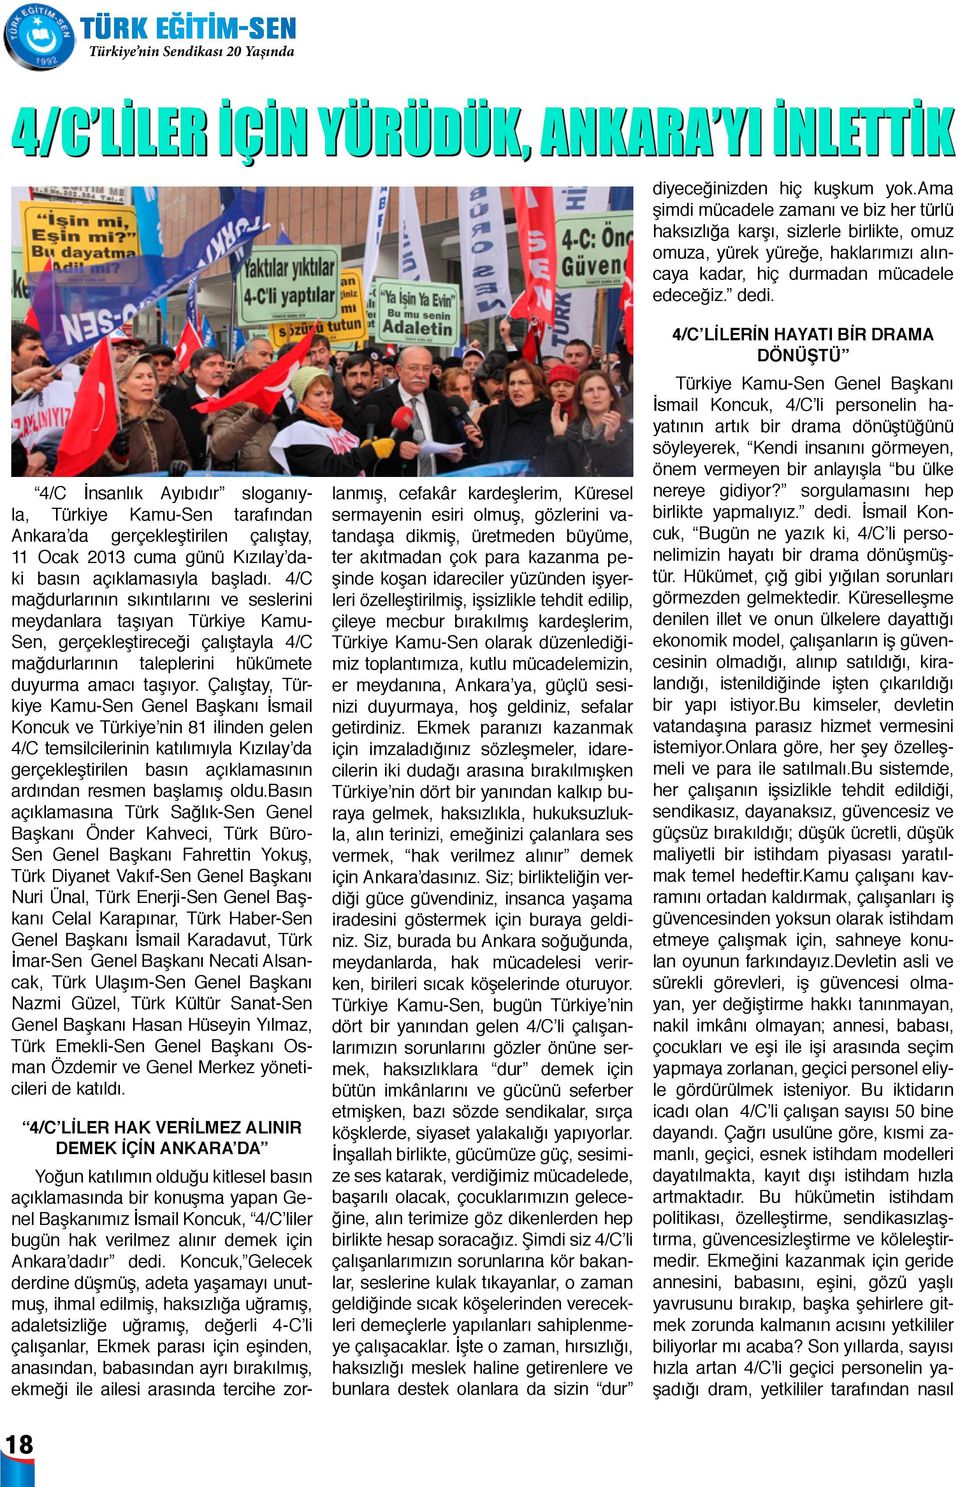 4/C İnsanlık Ayıbıdır sloganıyla, Türkiye Kamu-Sen tarafından Ankara da gerçekleştirilen çalıştay, 11 Ocak 2013 cuma günü Kızılay daki basın açıklamasıyla başladı.